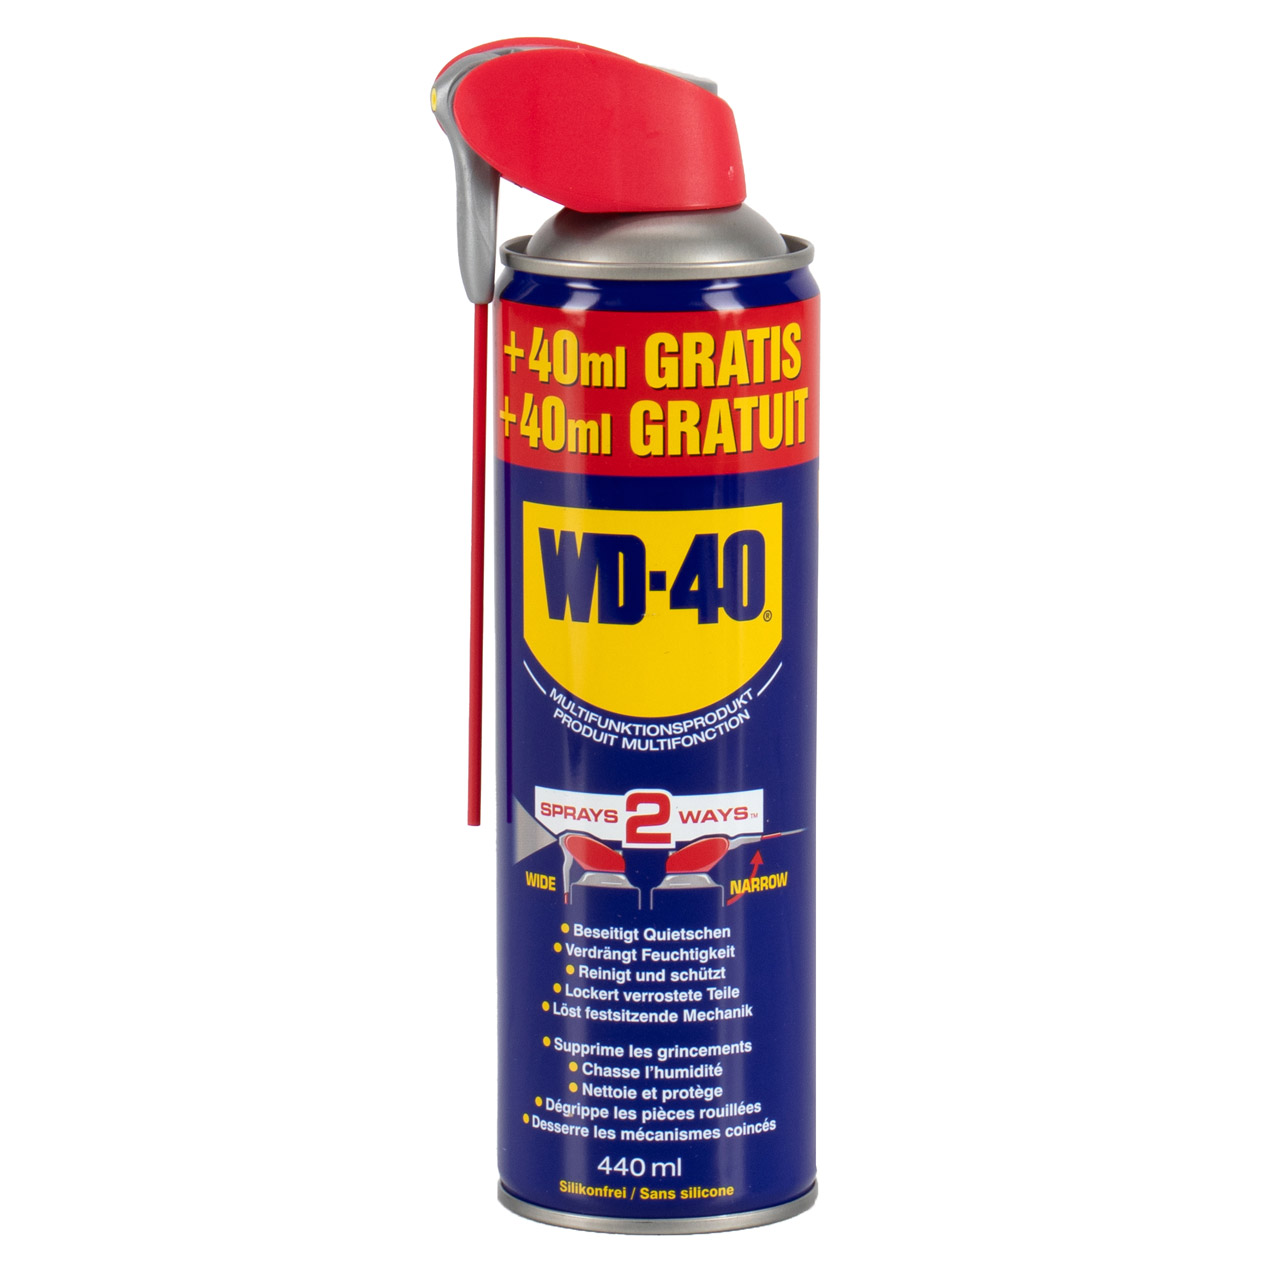 2x 440ml WD-40 491093 SMARTSTRAW Multifunktionsöl Vielzweck Rostlöser Spray